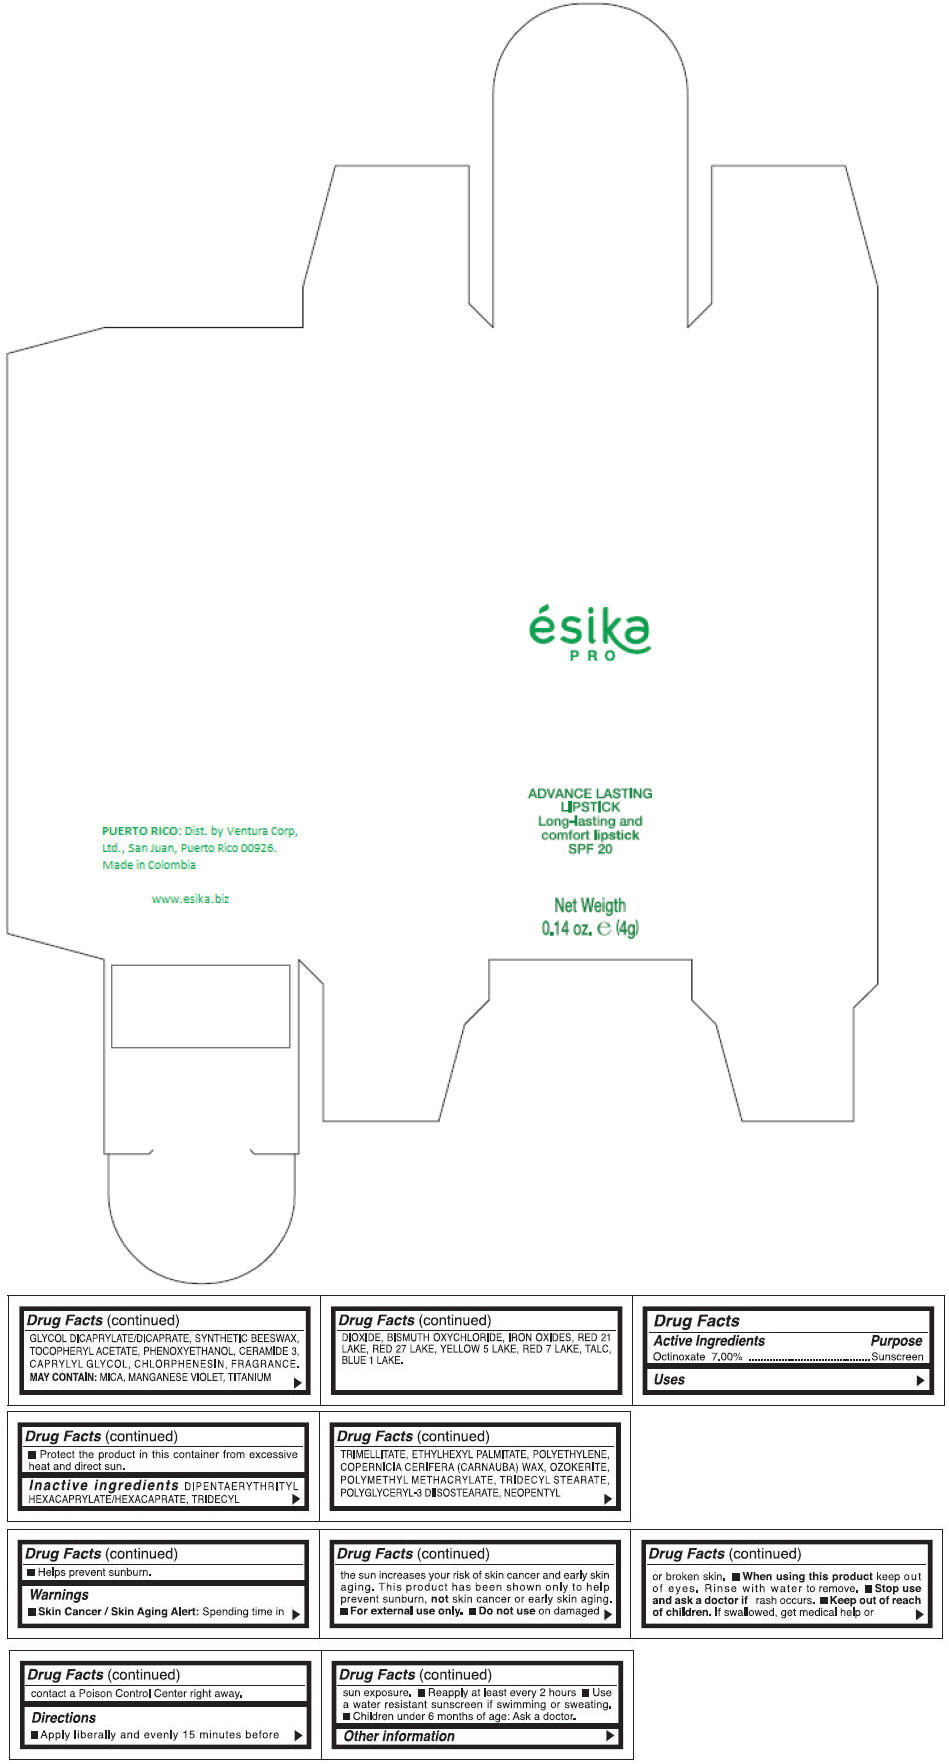 PRINCIPAL DISPLAY PANEL - 4 g Tube Box - (VINO DESEO) - PURPLE